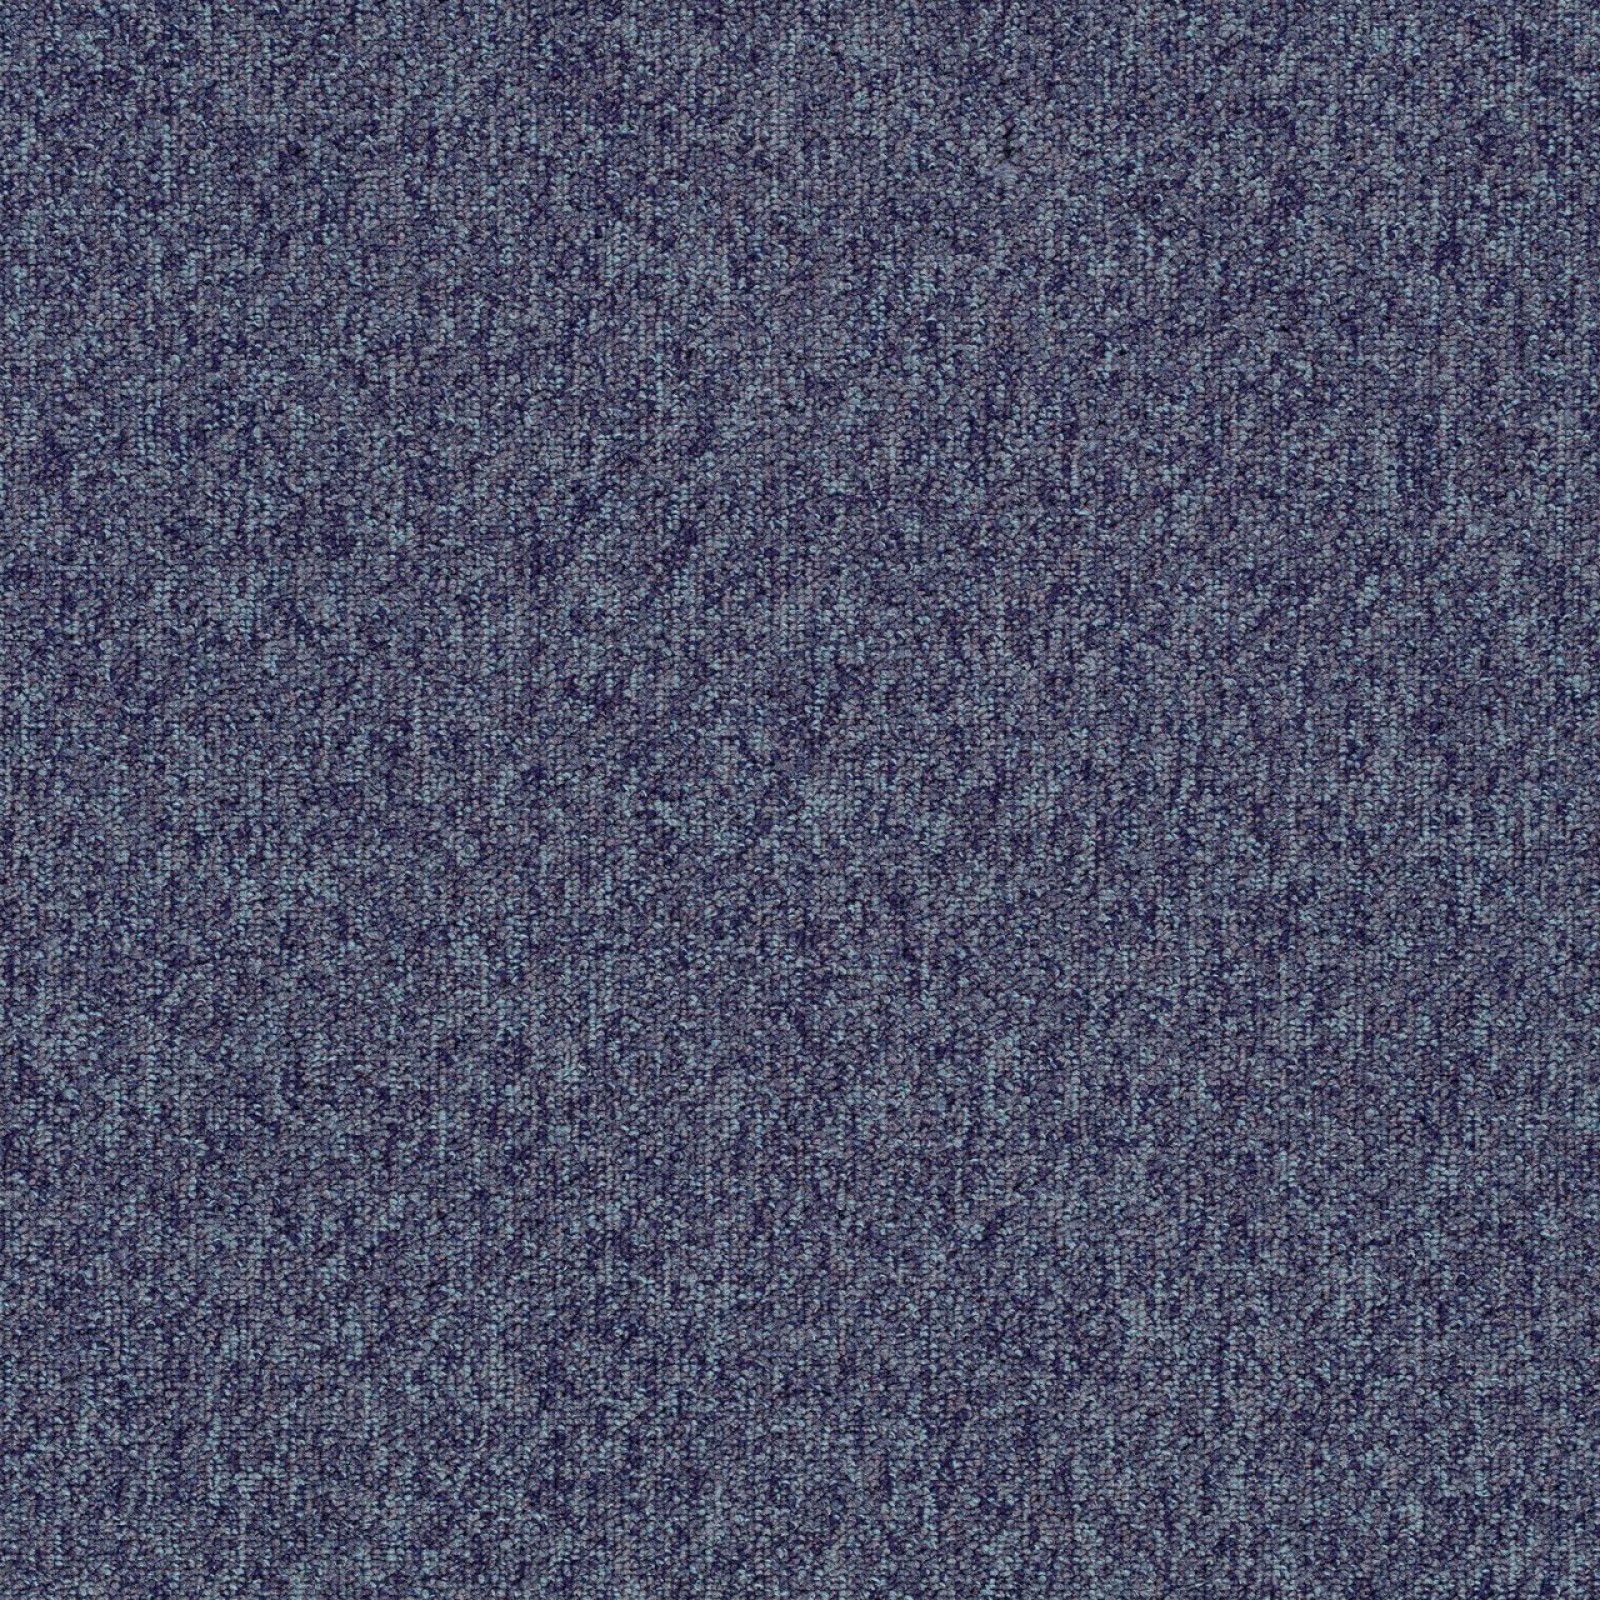 Vzor - 4380 blackcurrant